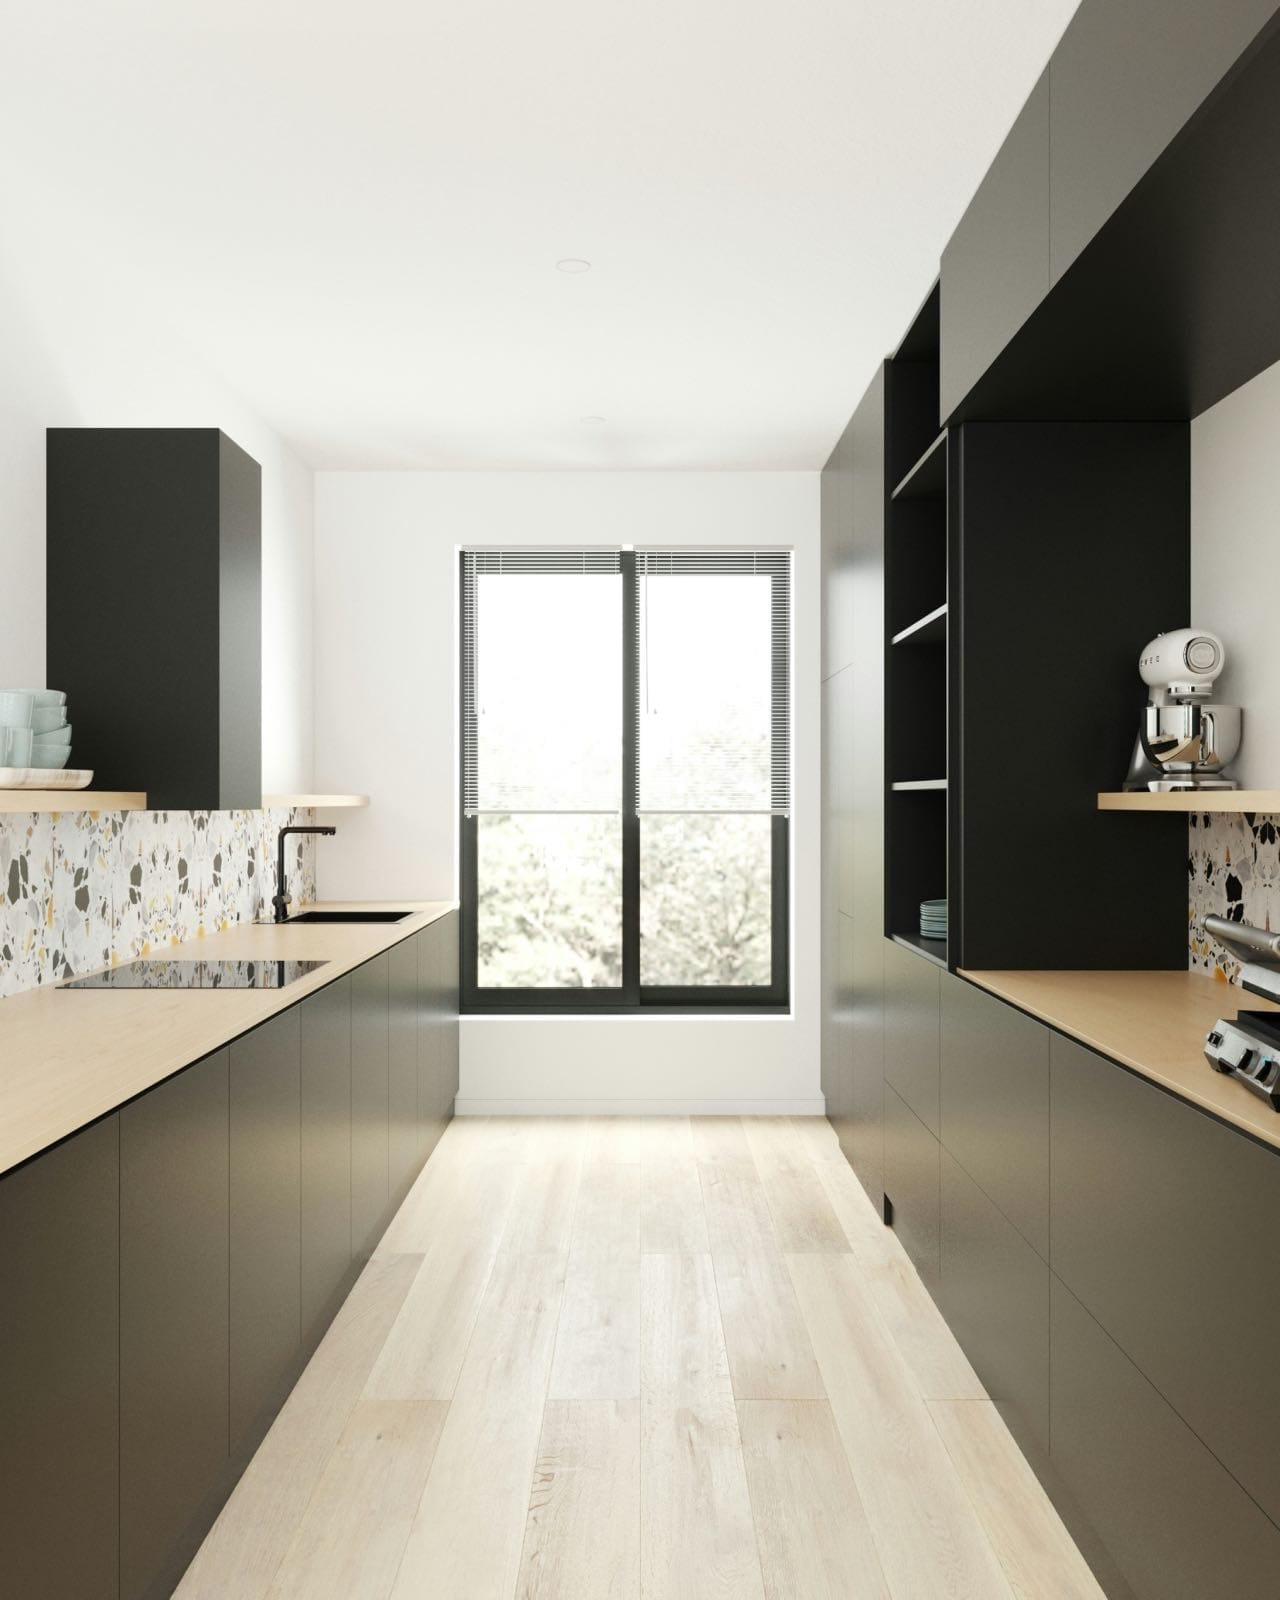 modern kitchen in black, kitchen renovation with modern materials